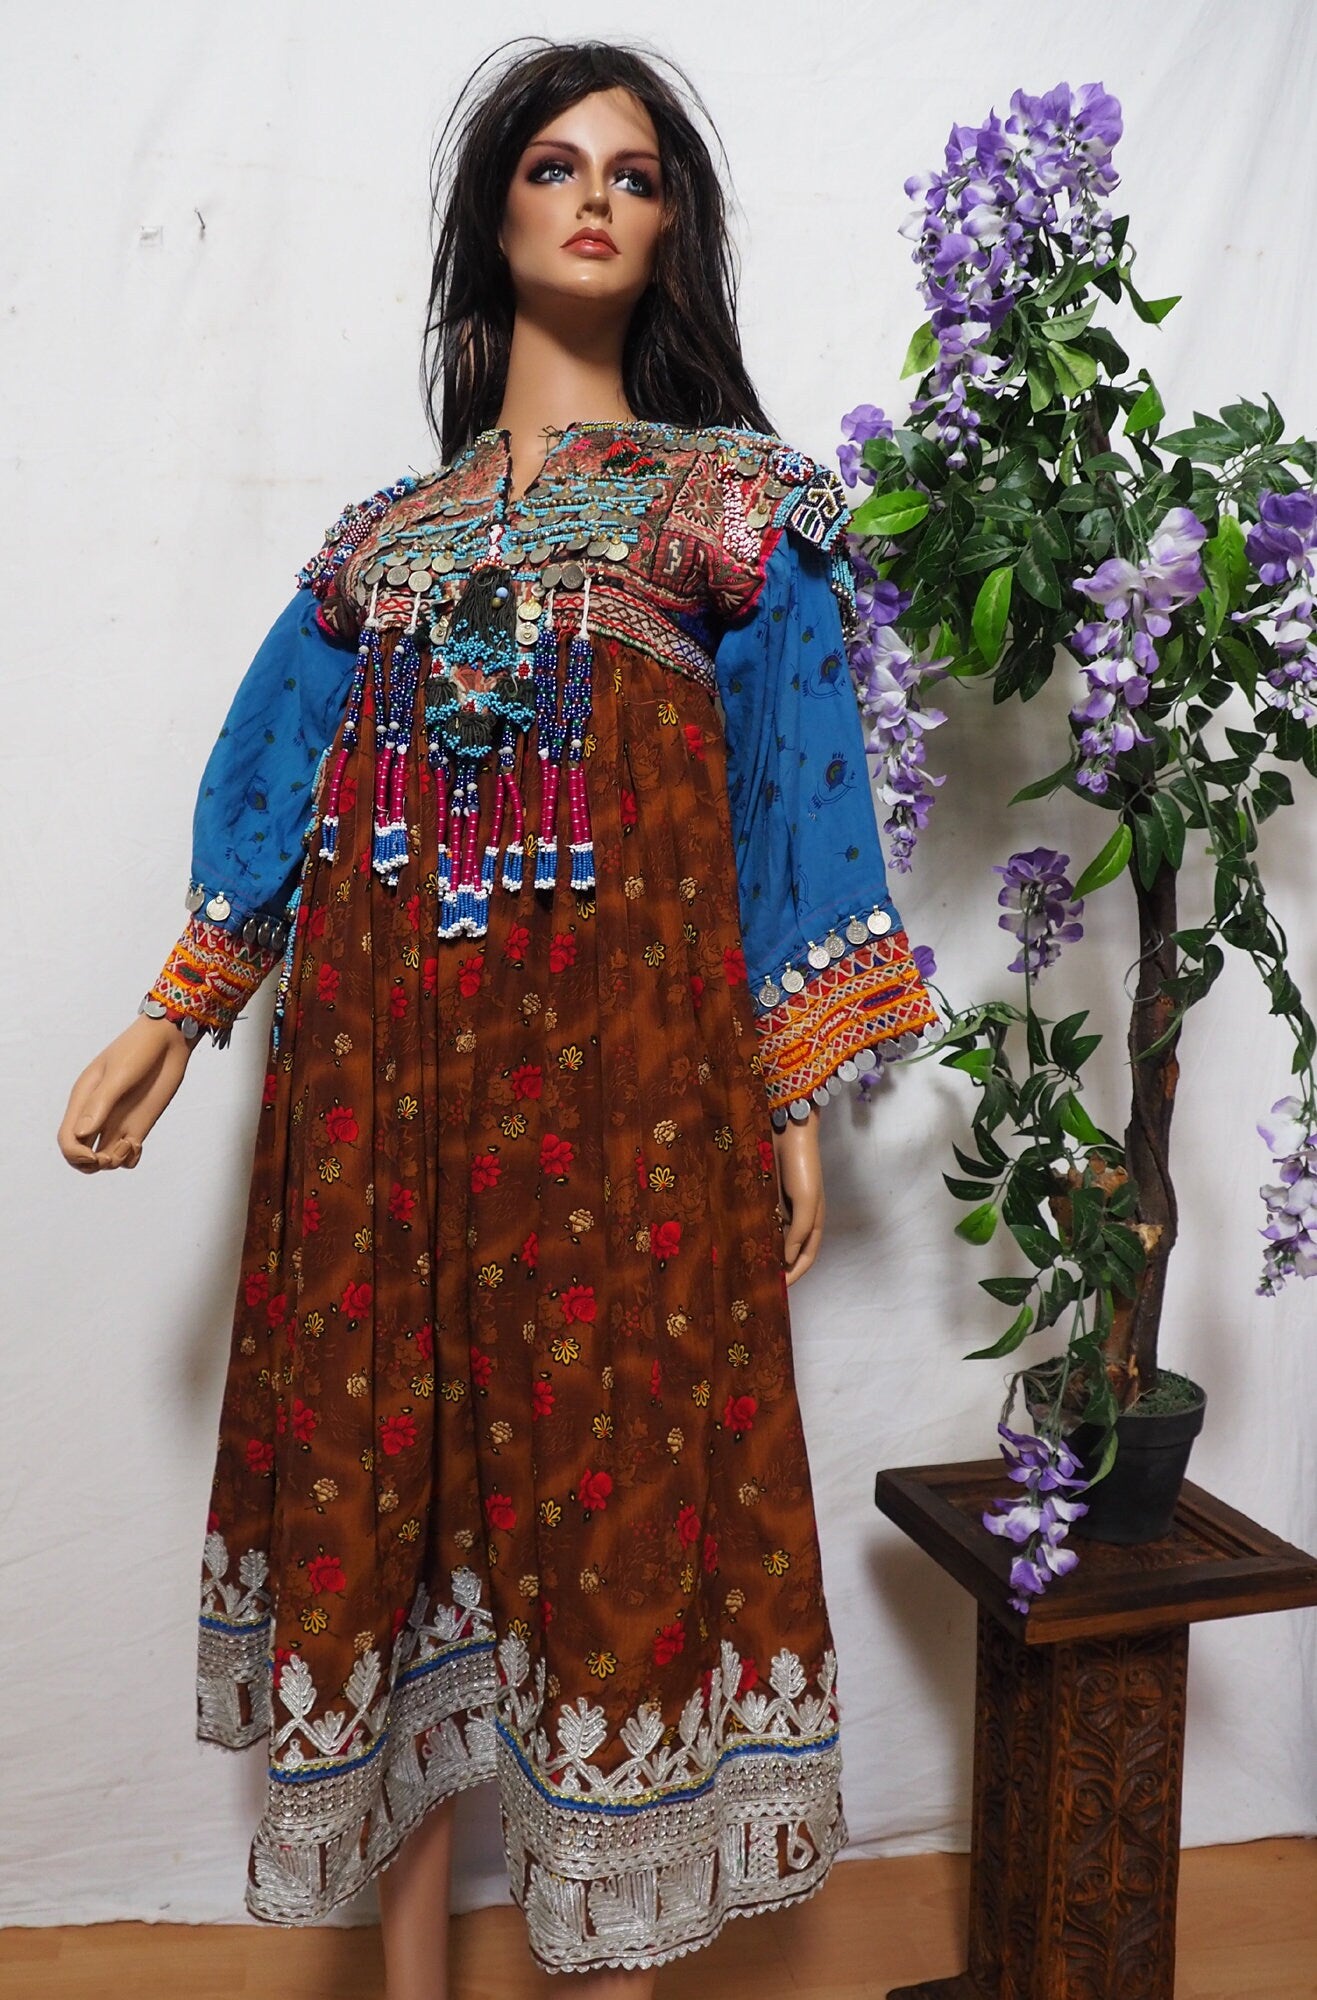 antik Orient Nomaden kuchi frauen Hochzeit Tracht afghan  kleid afghanistan hand bestickte kostüm Nr-21/3  Orientsbazar   